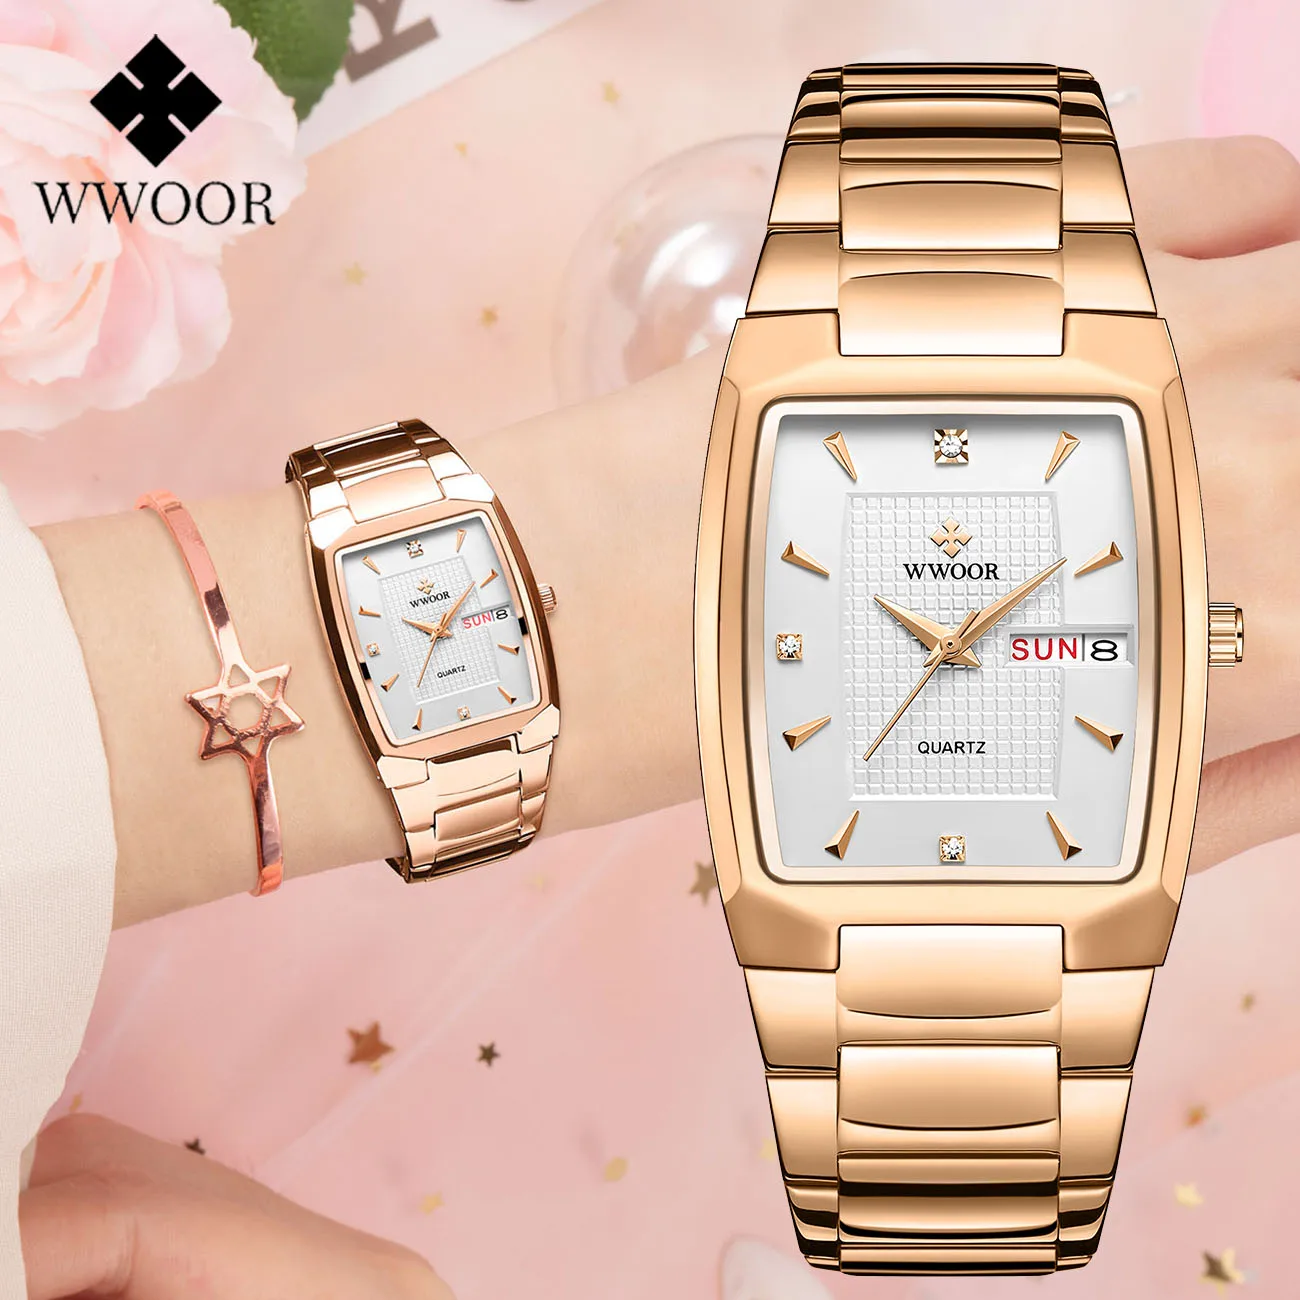 

WWOOR Reloj mujer Luxury Square Women’s Watches Dress Ladies Watch Waterproof Stainless Steel Quartz Wristwatch Women Date Clock